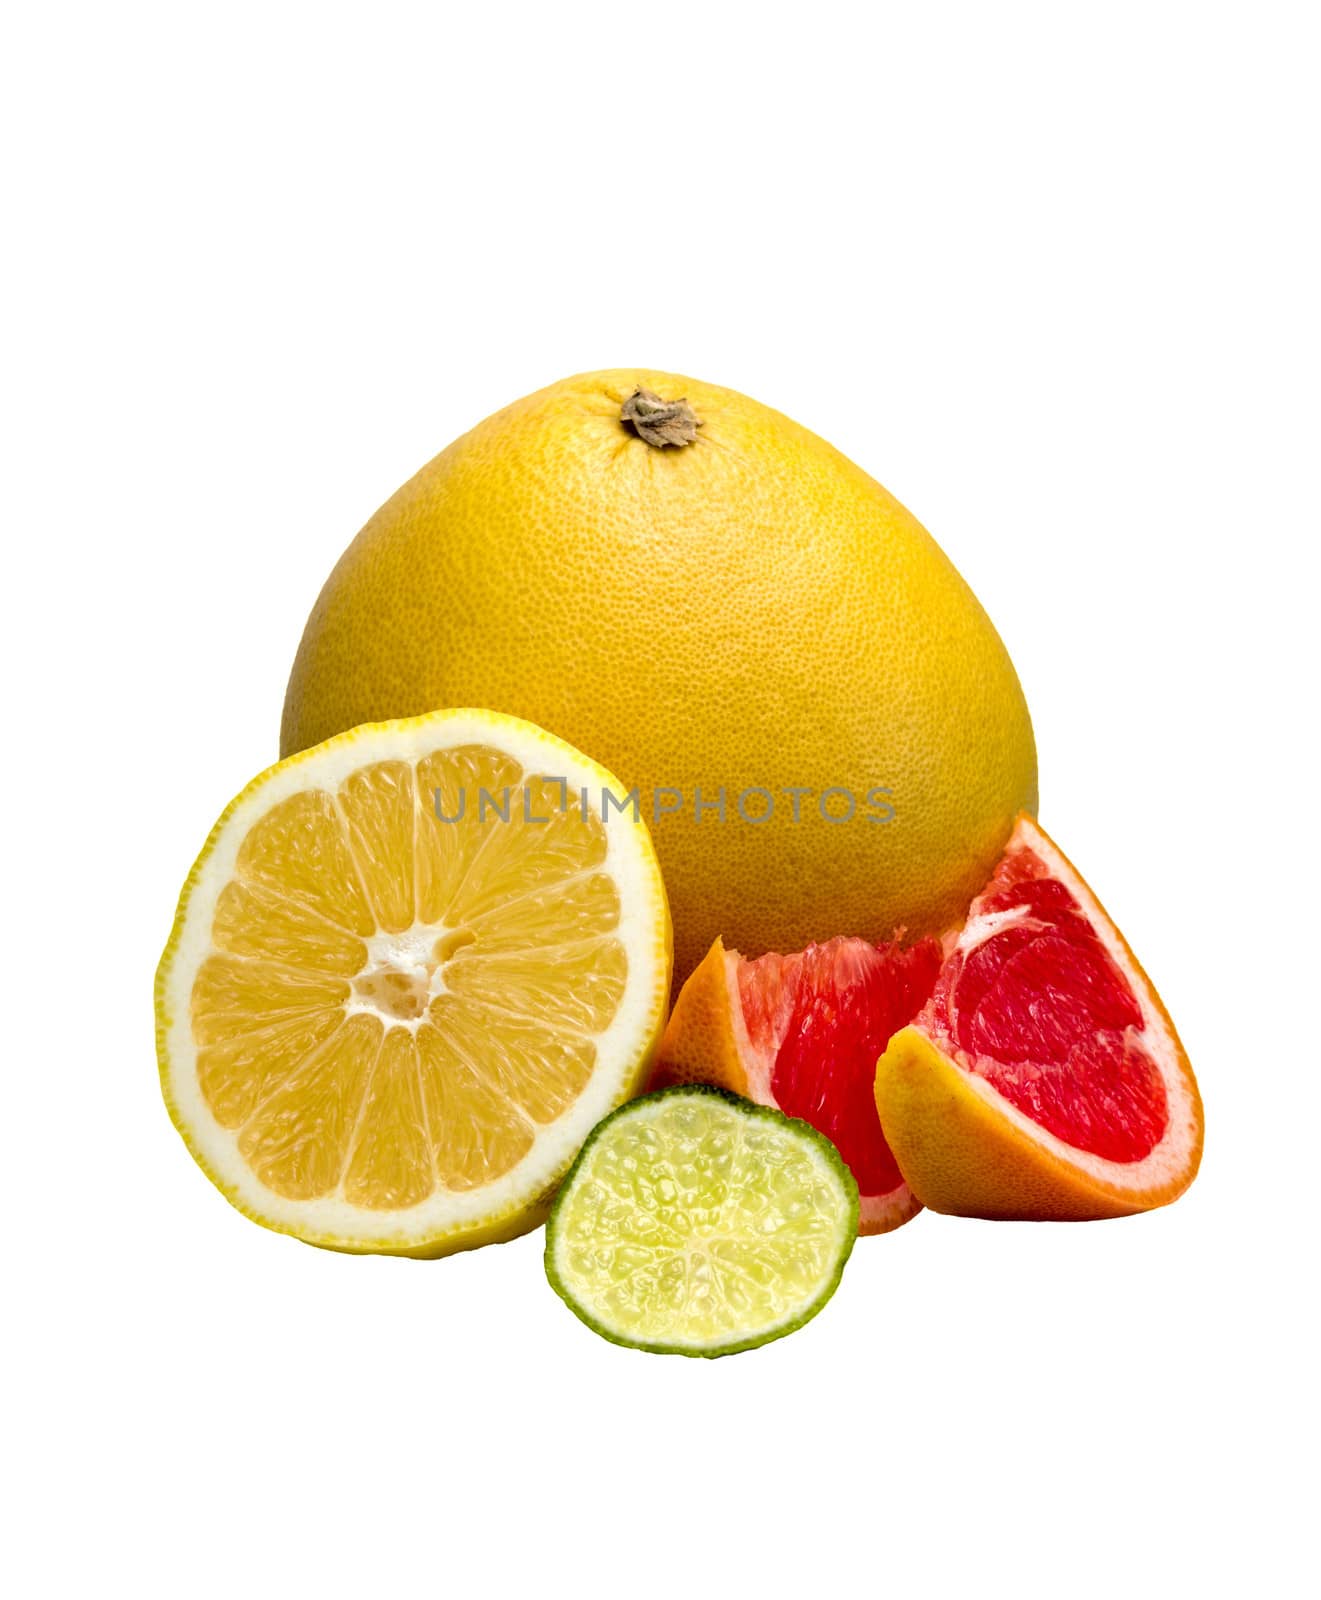 Fruits on a white background: orange, grapefruit, pamela, lime